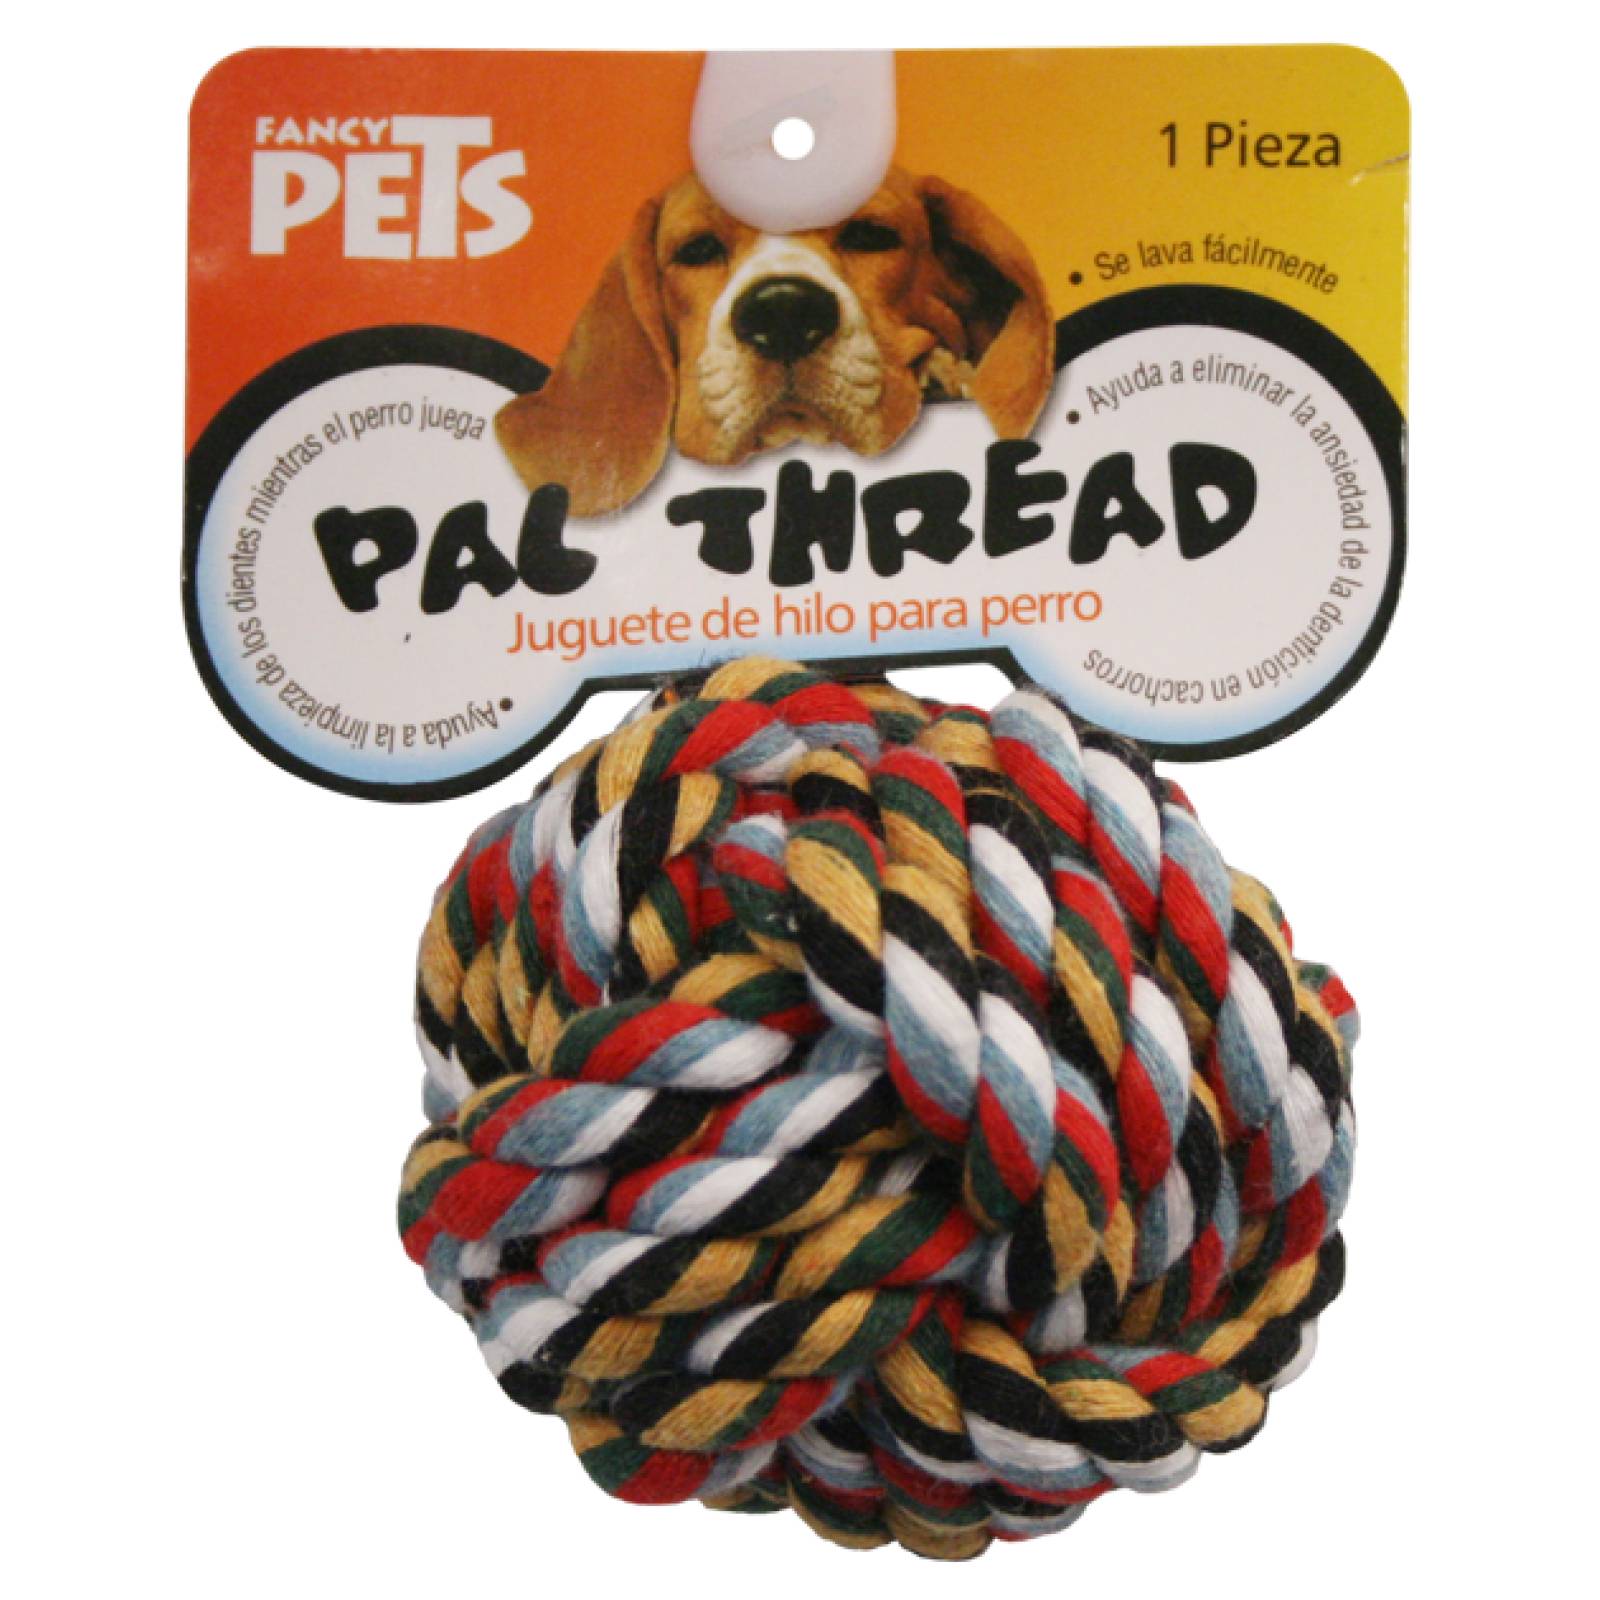 Fancy Pets Juguete para Perro Bola de Hilo de Colores Surtidos 7 cm